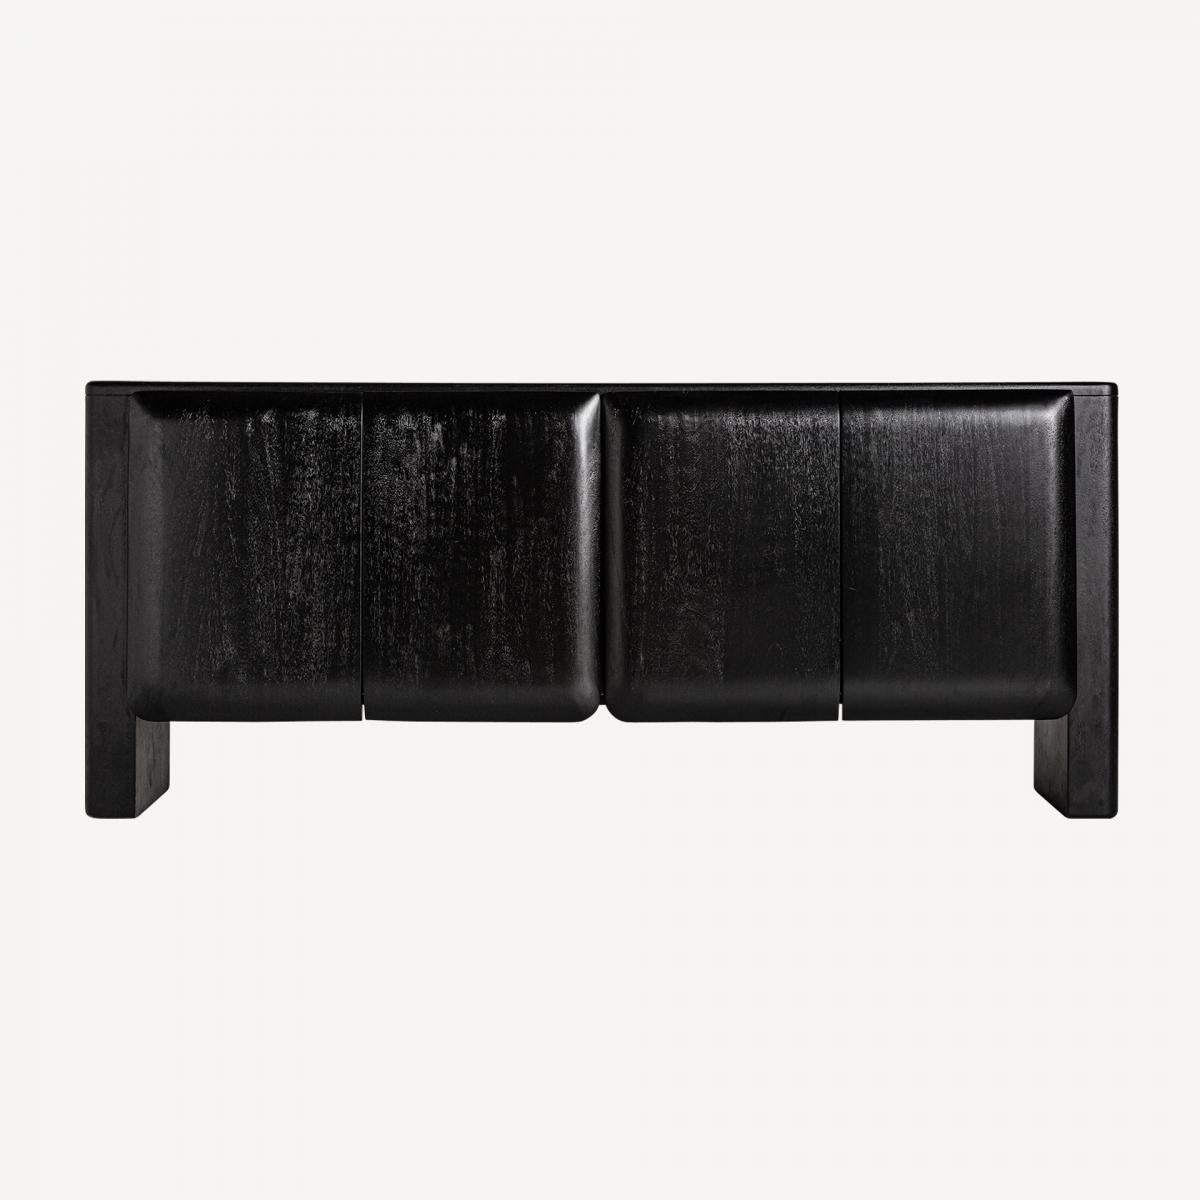 Das moderne und minimalistische Design dieses Büfetts aus Mangoholz in schlichter schwarzer Ausführung verkörpert schlichte Eleganz. Seine minimalistische Ästhetik zeichnet sich durch klare Linien und Schlichtheit aus und lässt die natürliche